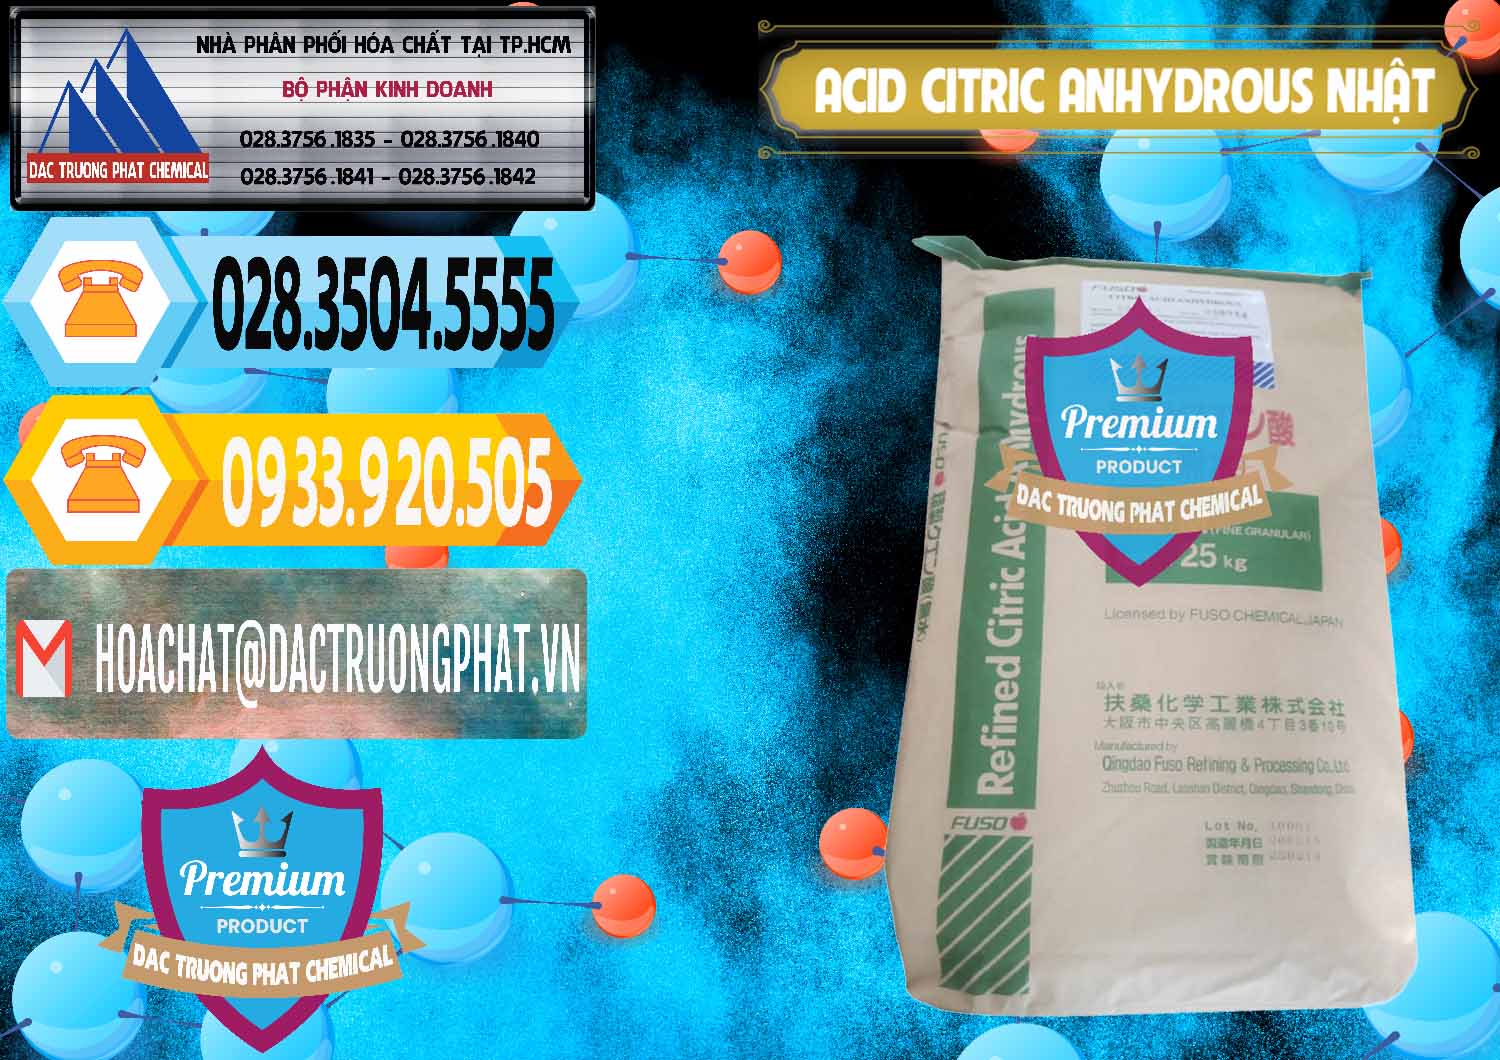 Đơn vị cung cấp & bán Acid Citric - Axit Citric Anhydrous FUSO Nhật Japan - 0439 - Công ty chuyên cung cấp ( kinh doanh ) hóa chất tại TP.HCM - hoachattayrua.net